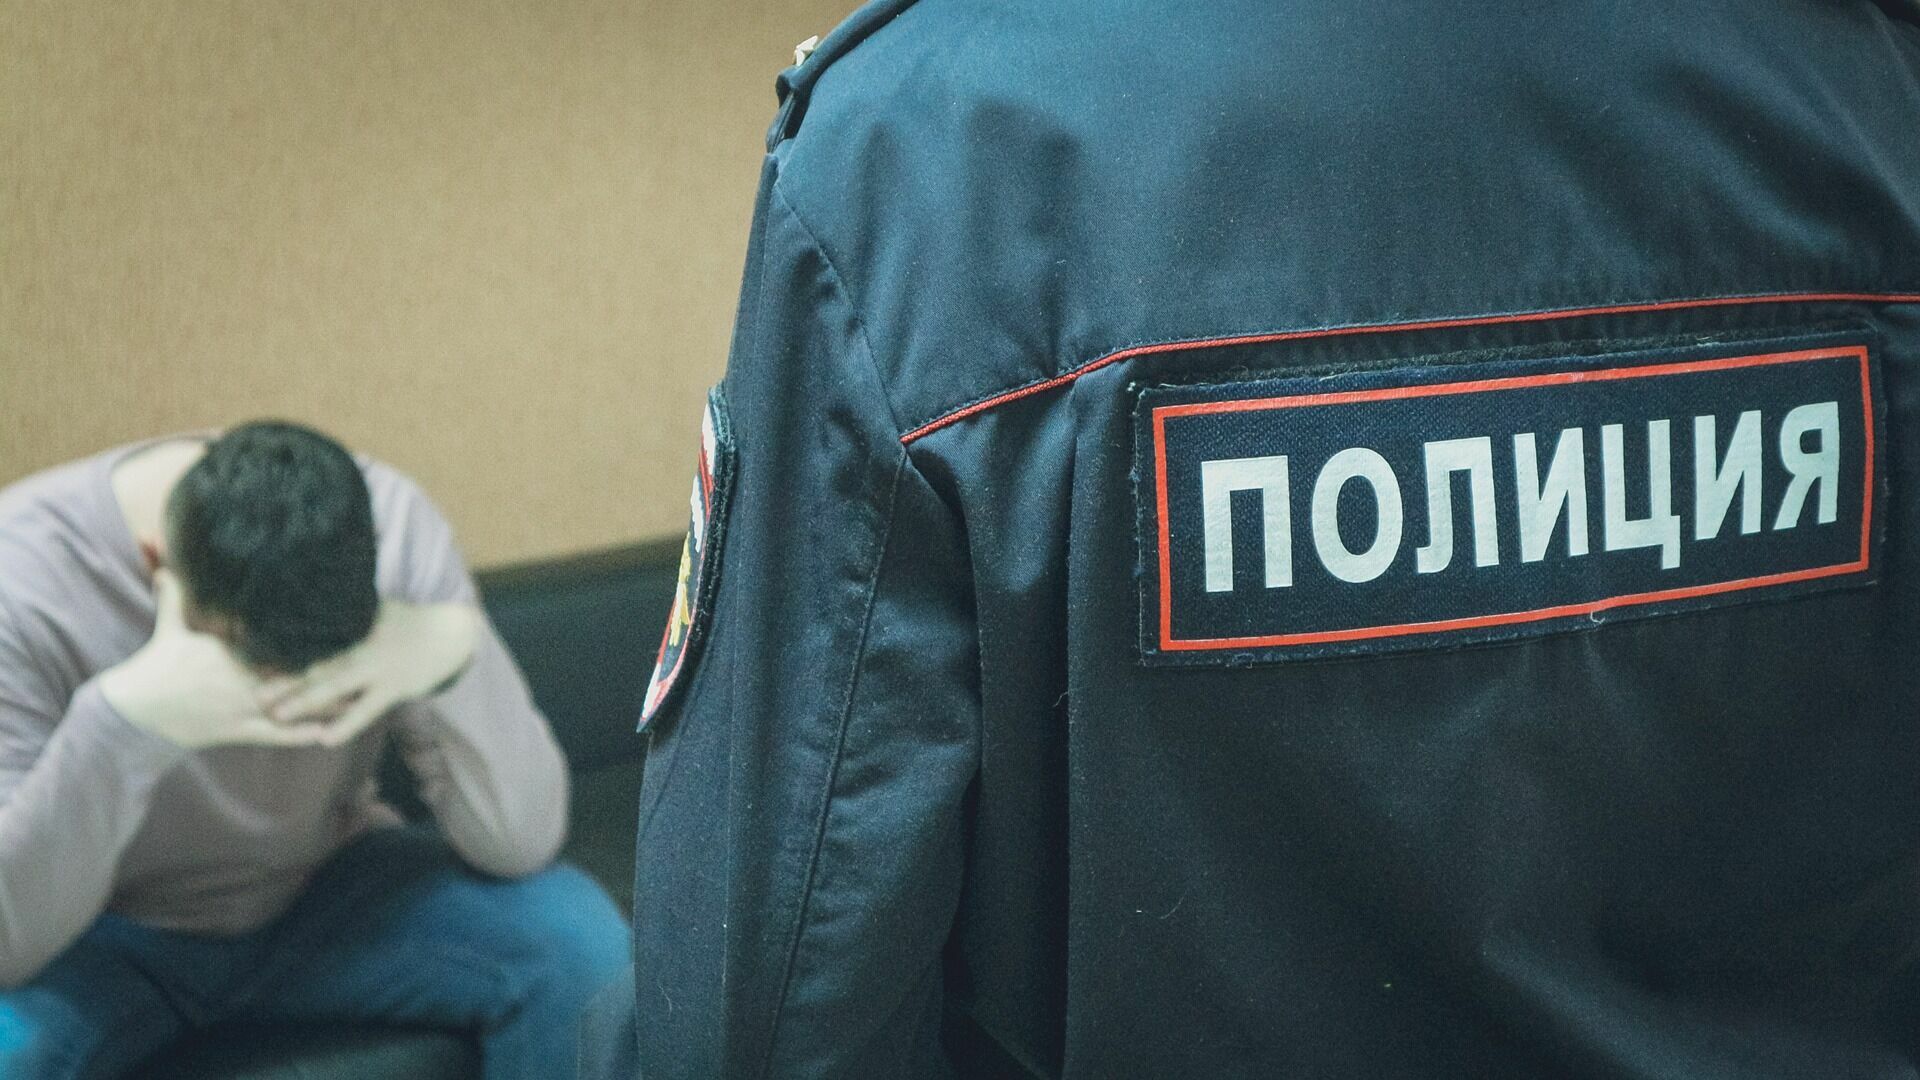 Полмиллиона рублей перевел мошенникам доверчивый студент в Волгограде